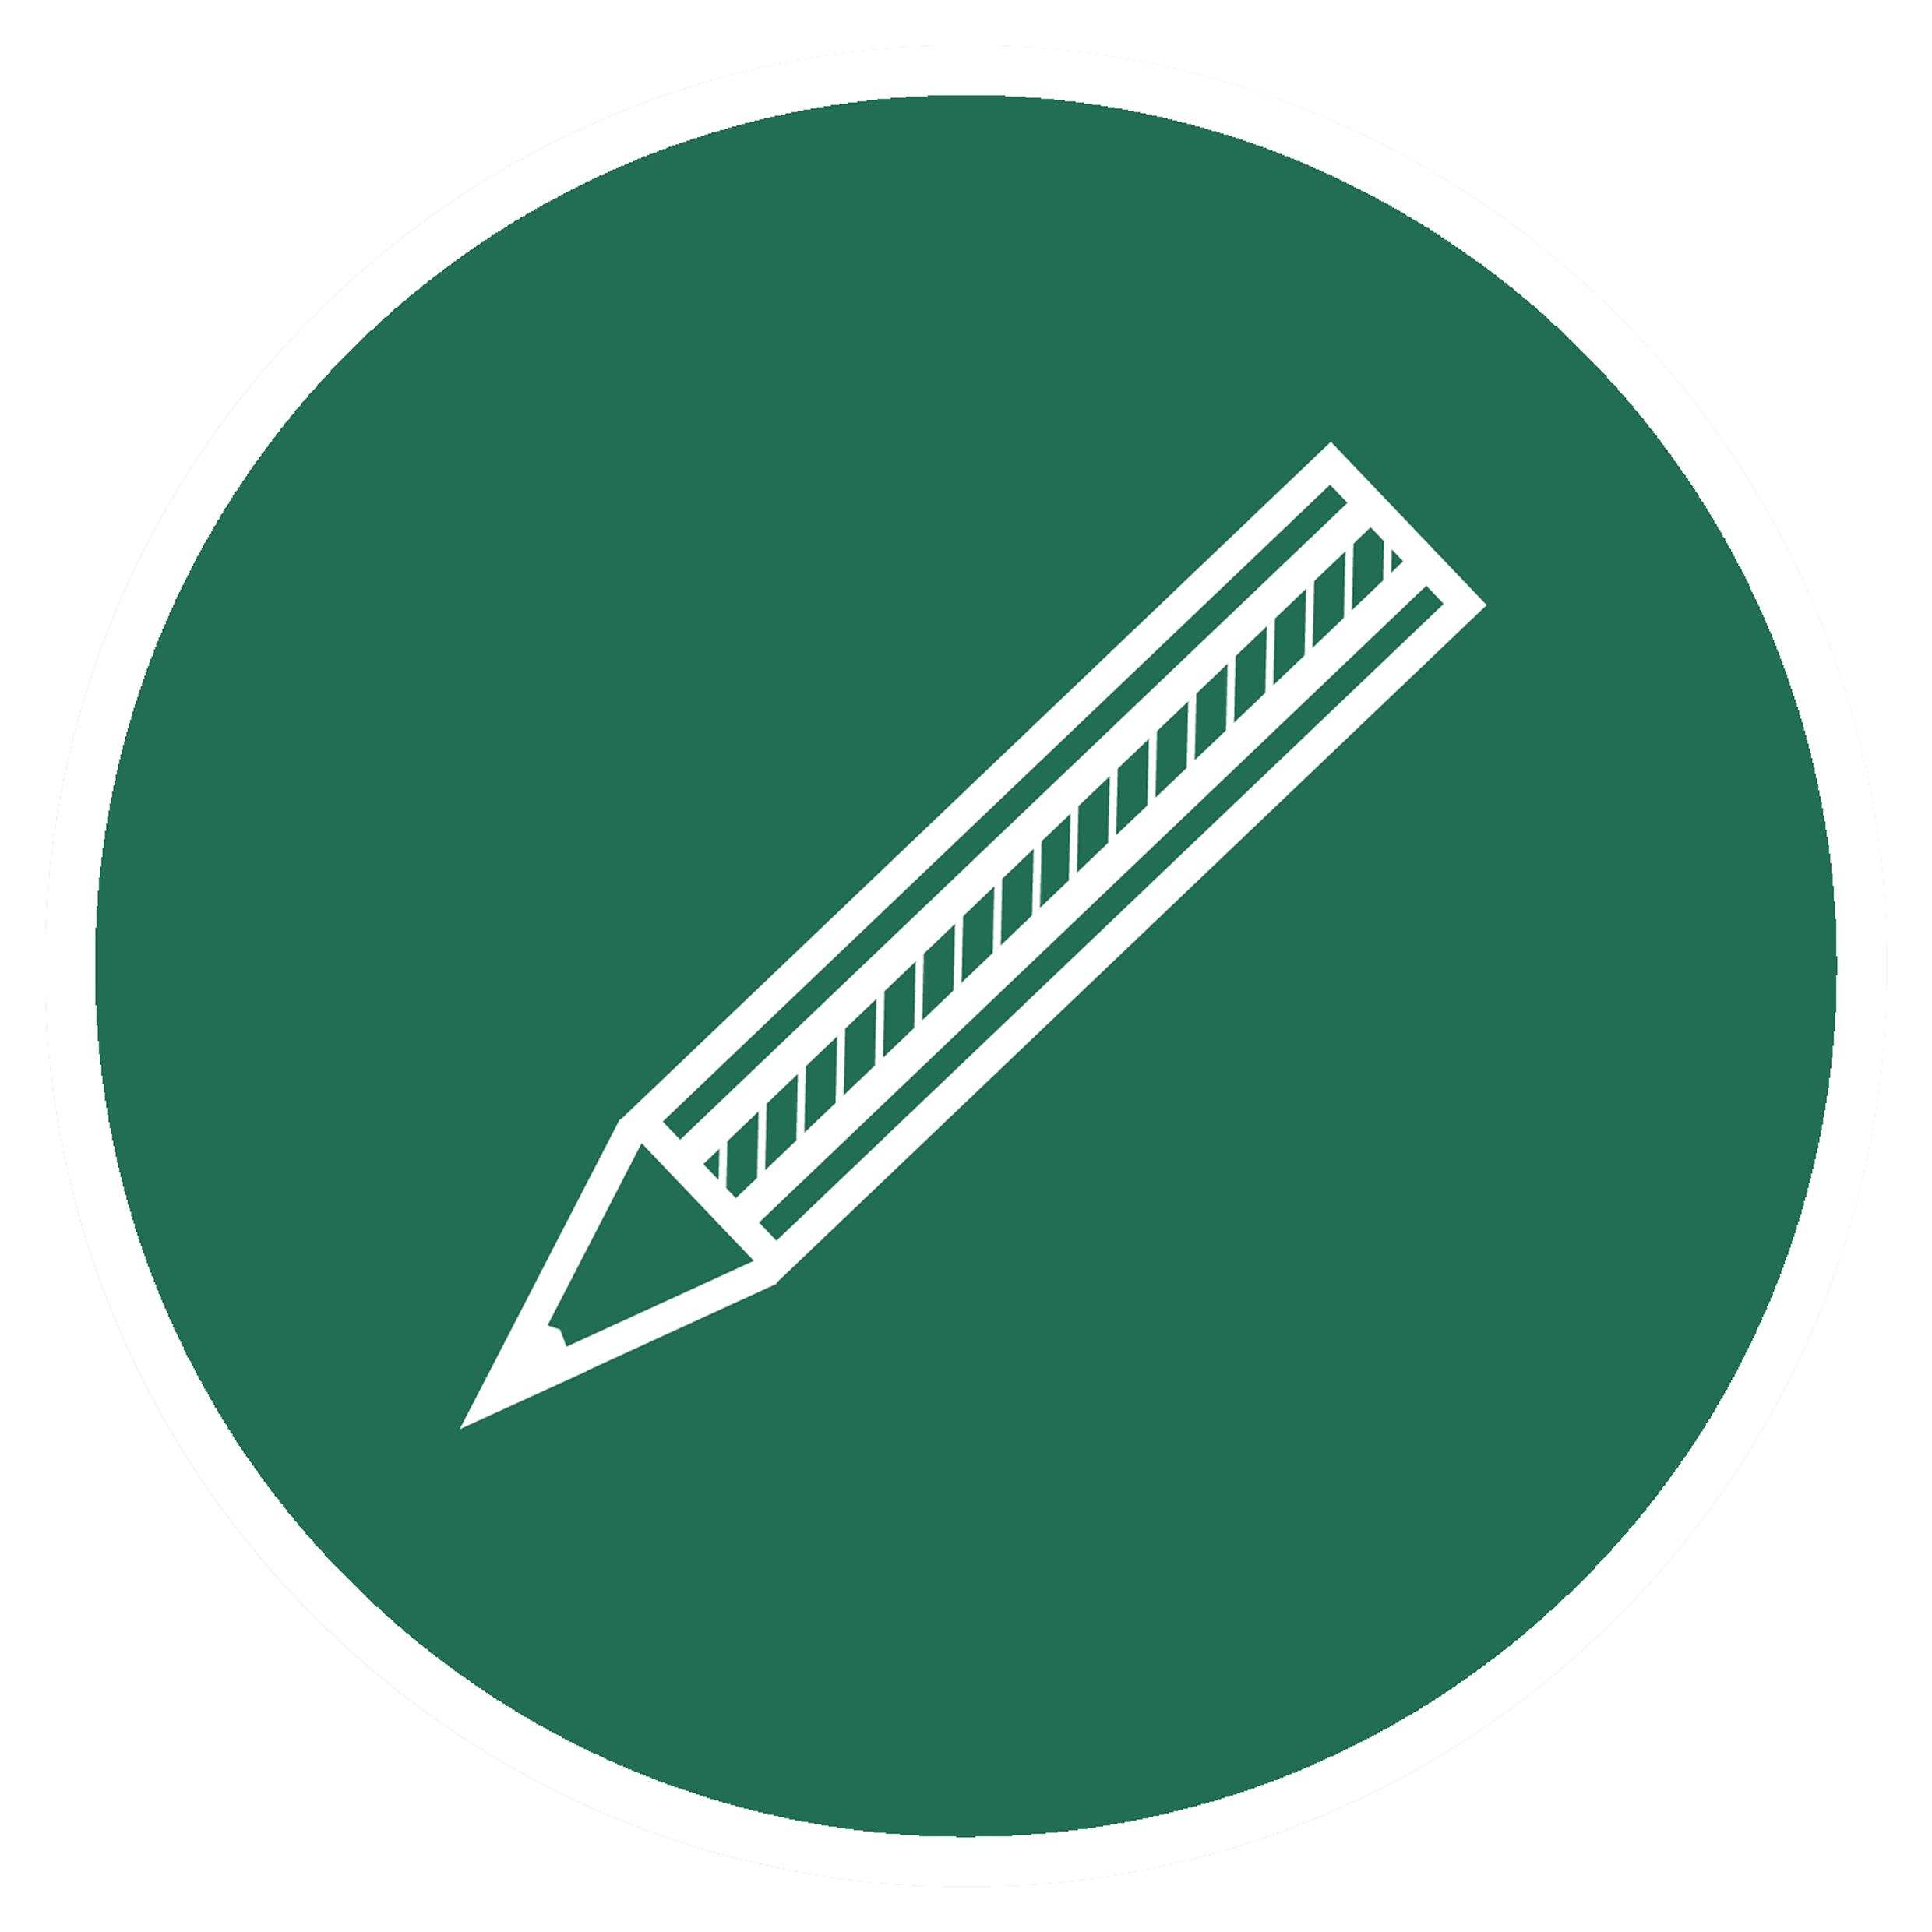 Writing Logo